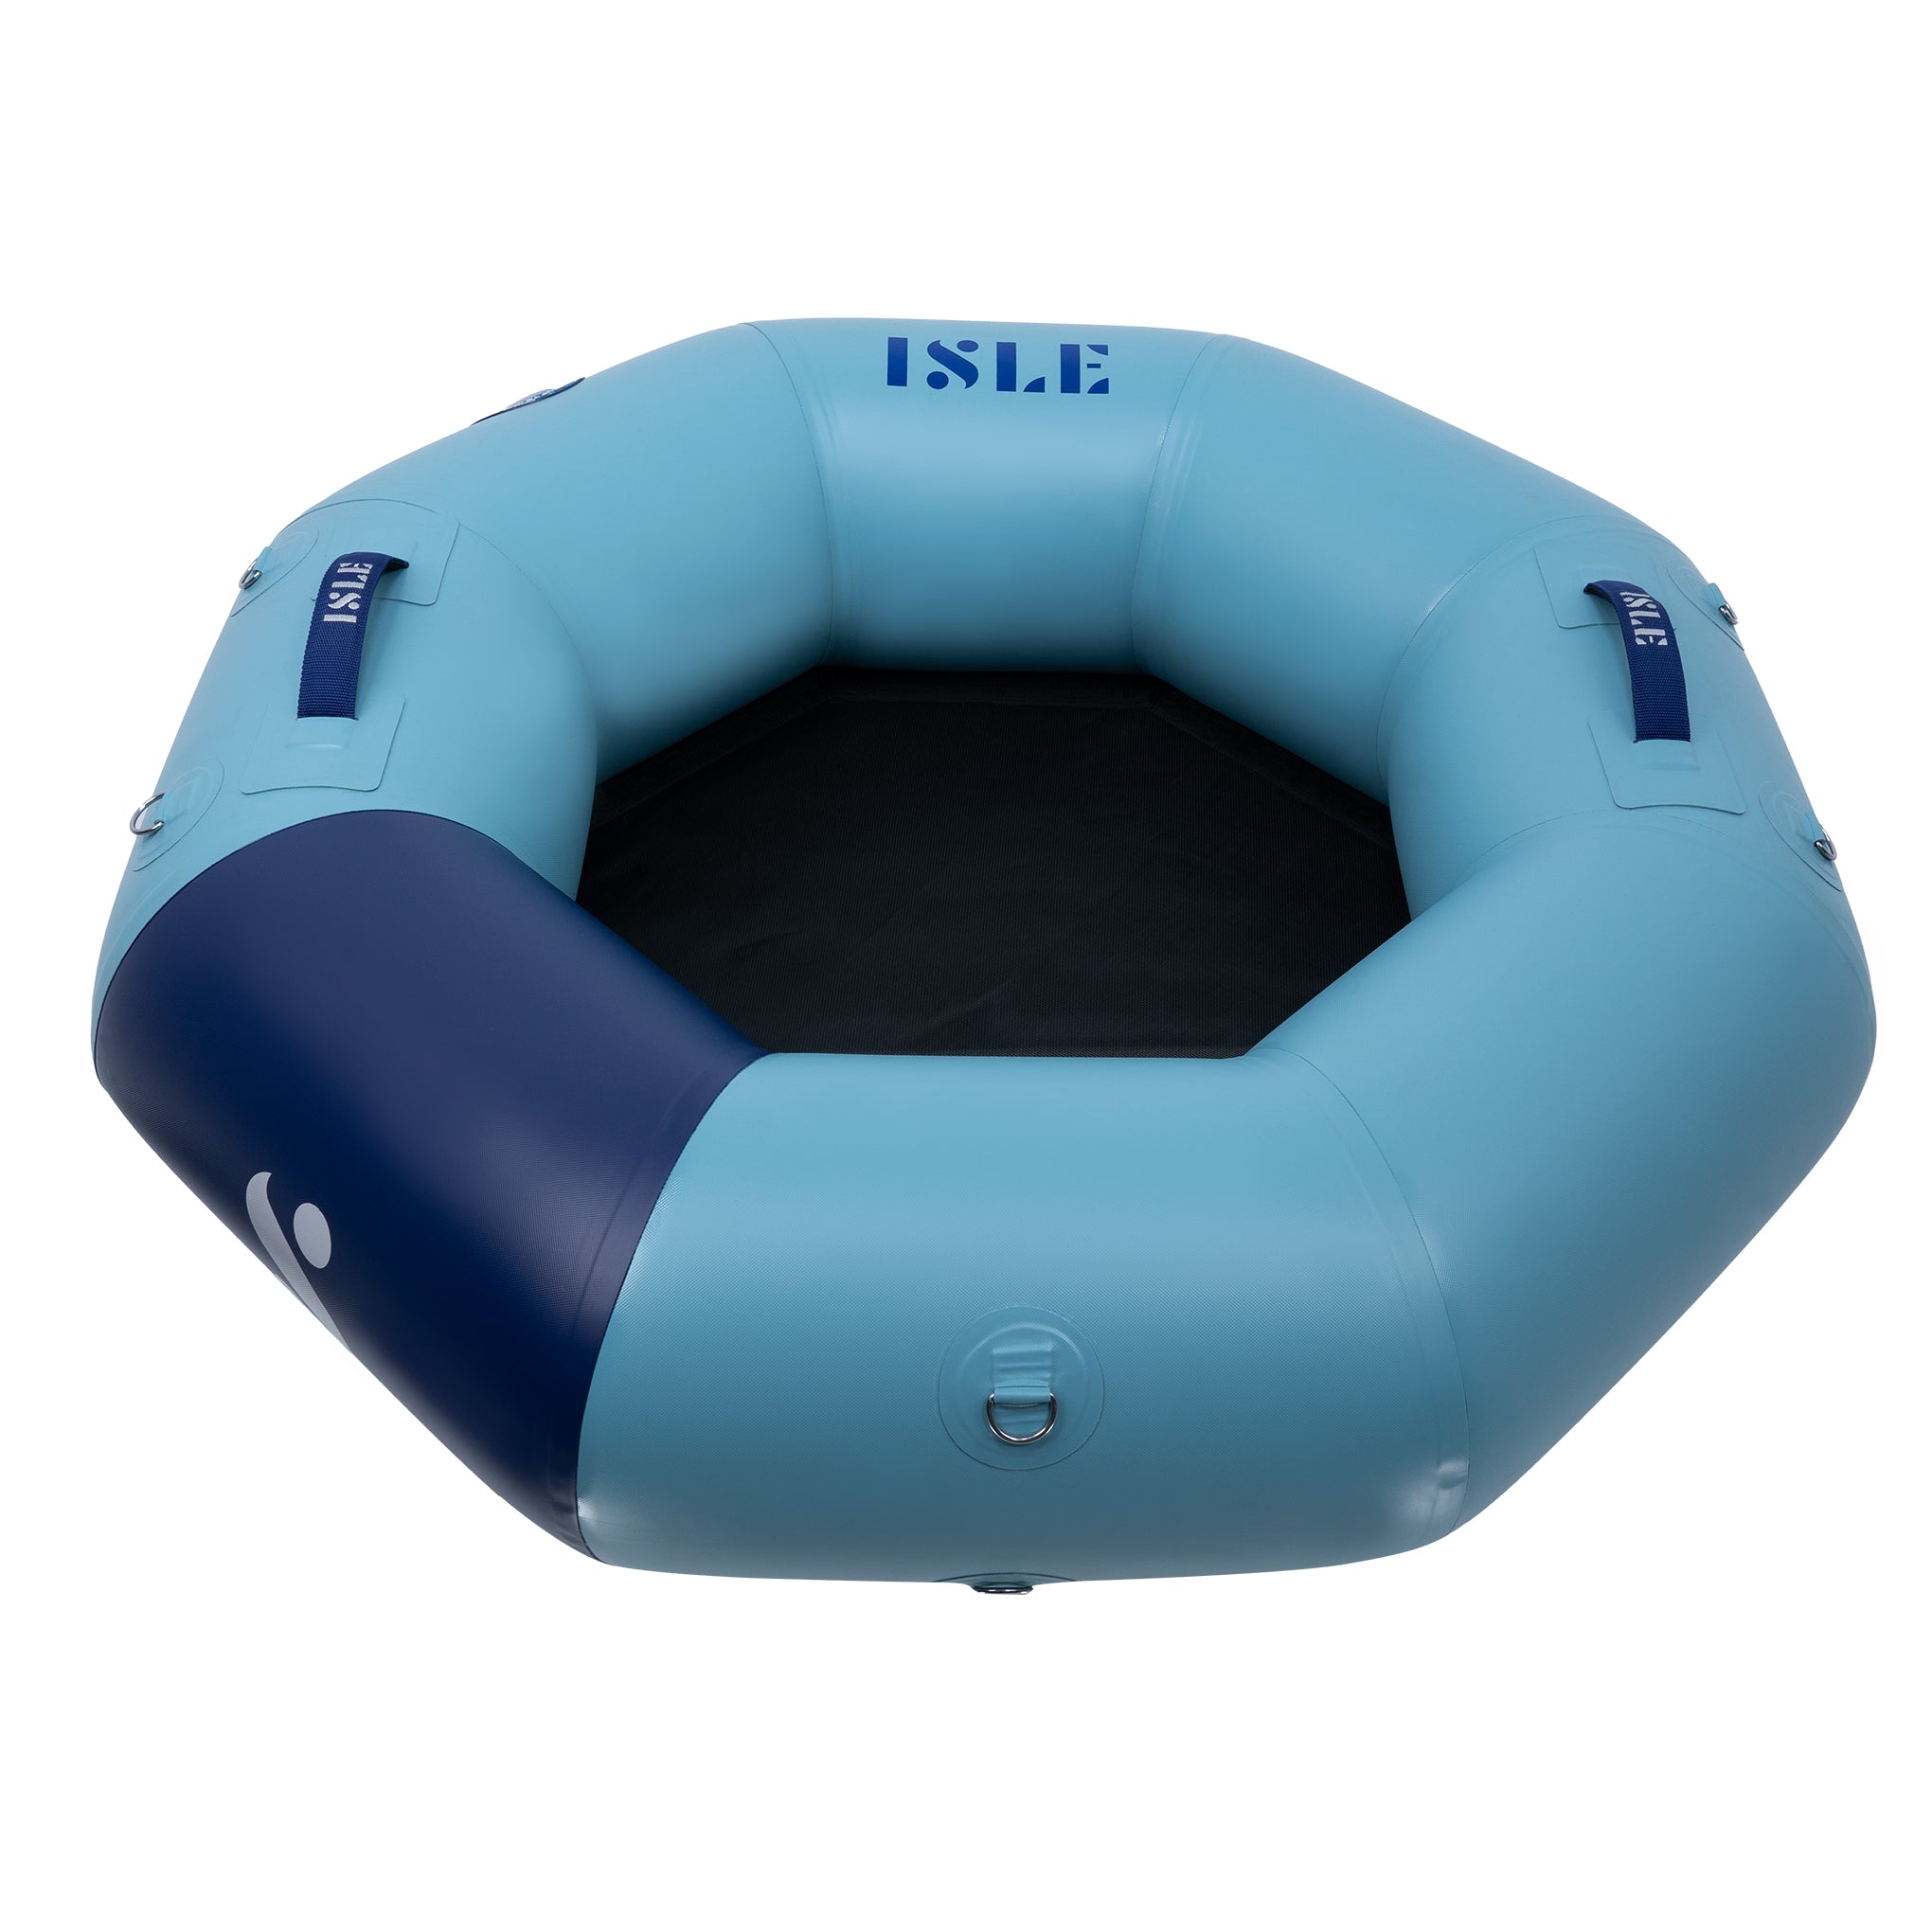 Tube-O-Line, Inflatable Inner Tube & Mini-Trampoline, ISLE